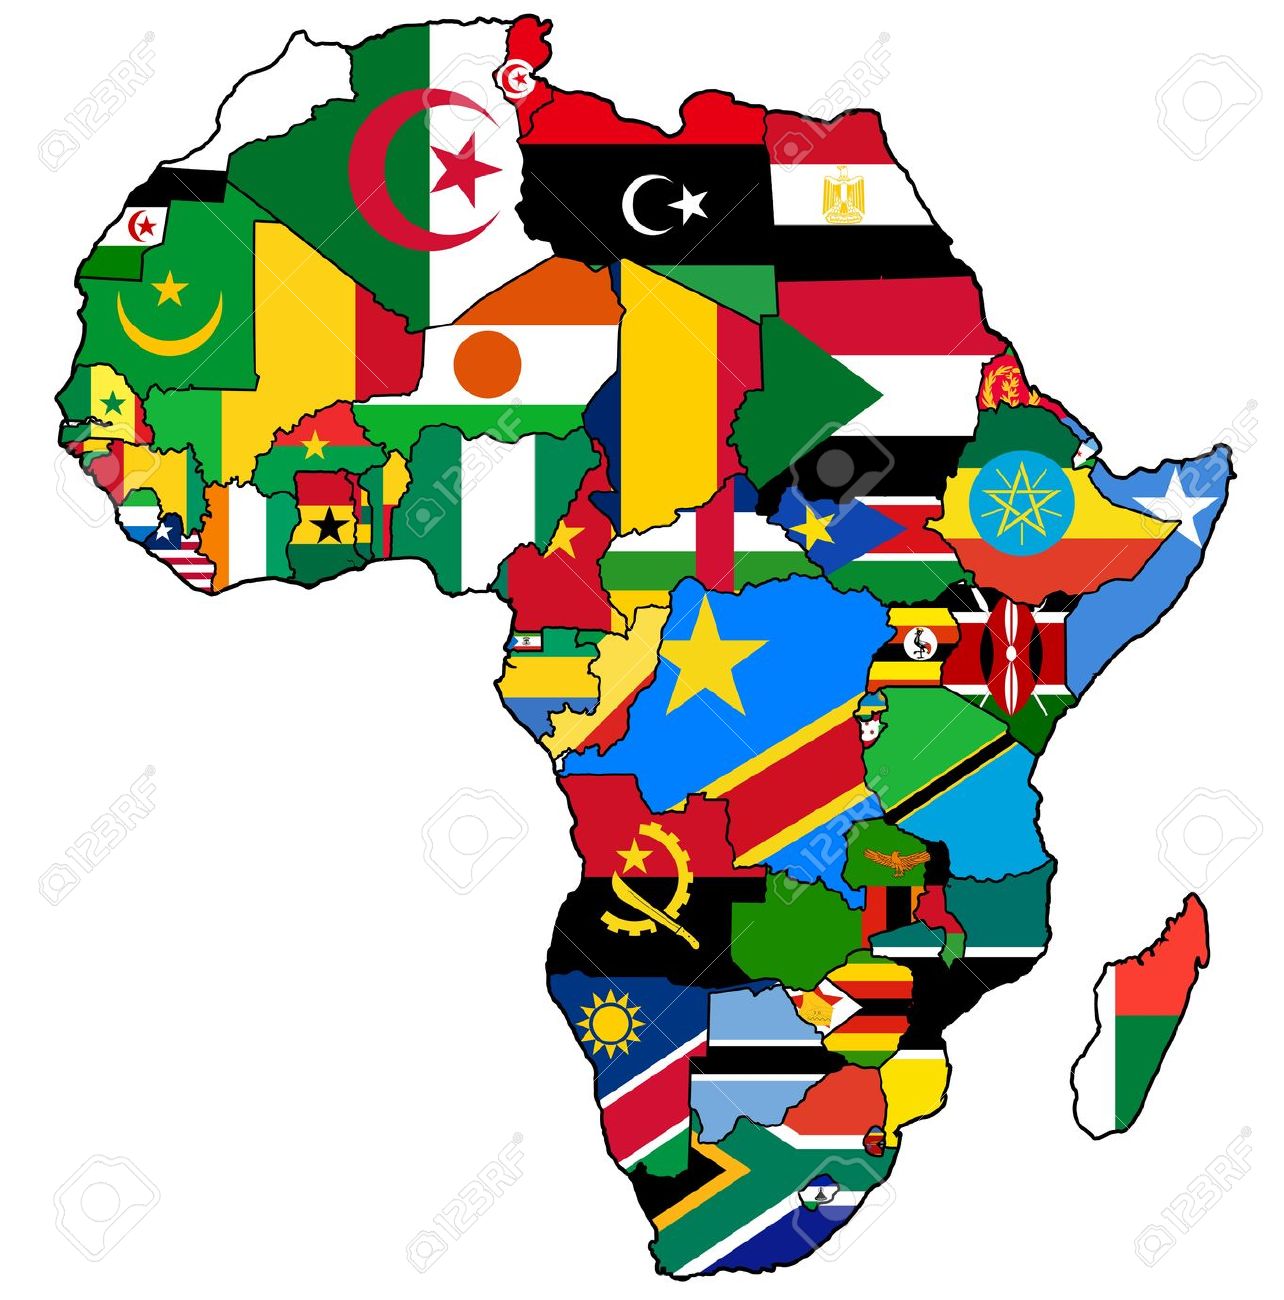 Afrique : Recul de la performance des politiques et institutions selon la Banque mondiale